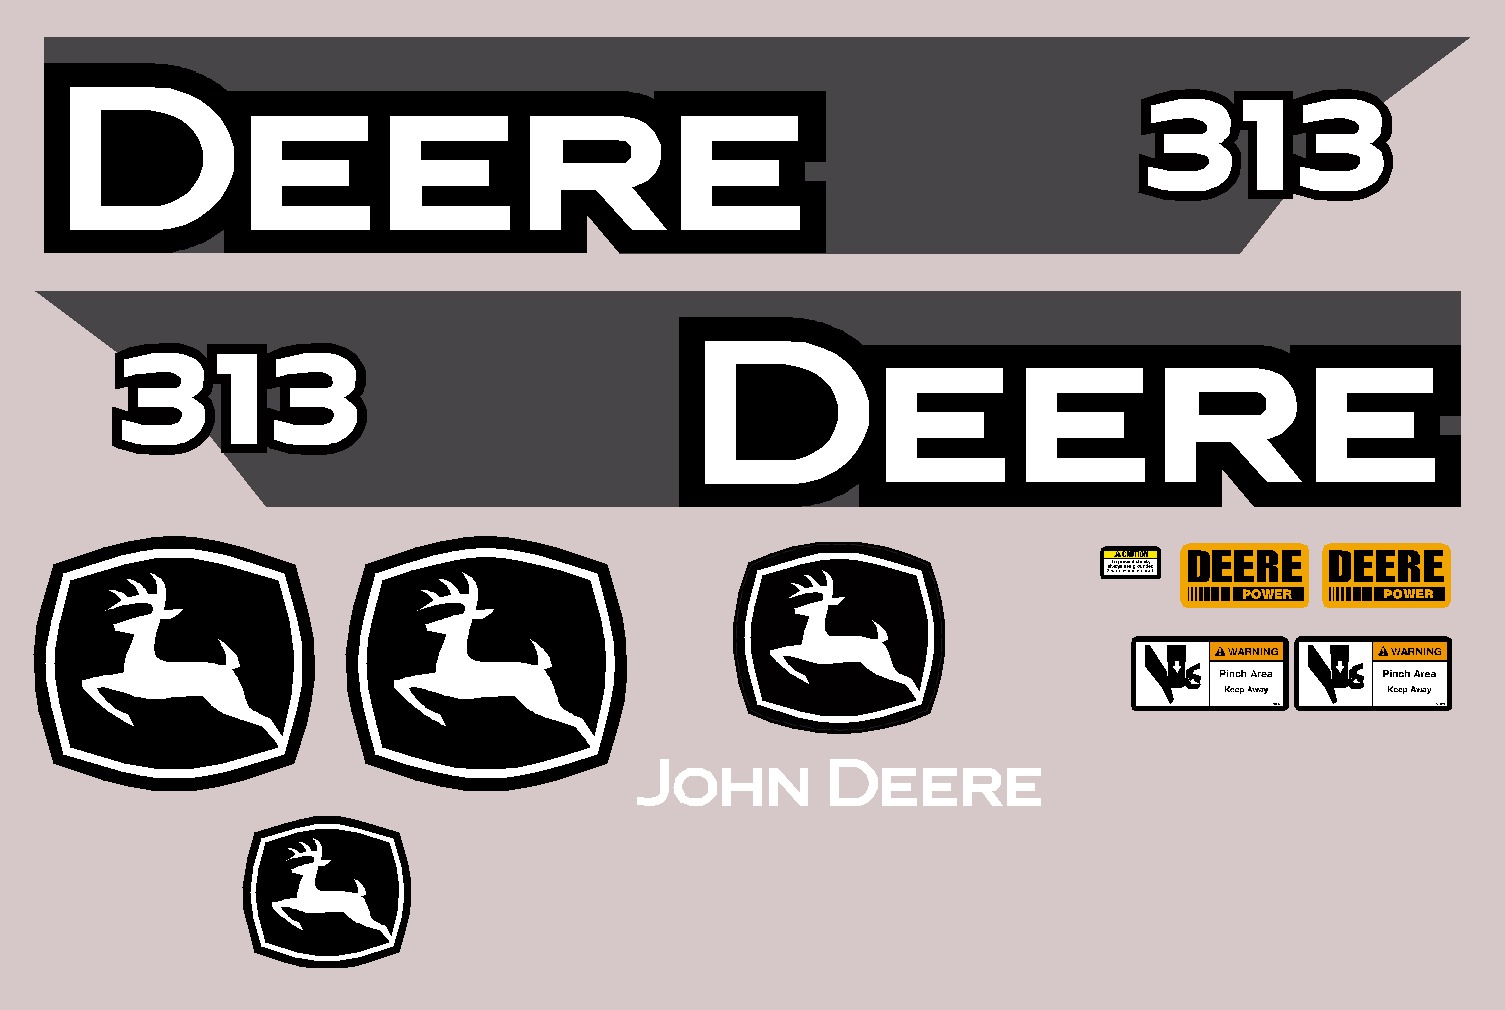 Deere Skid Steer Loaders 313 Decal Packages